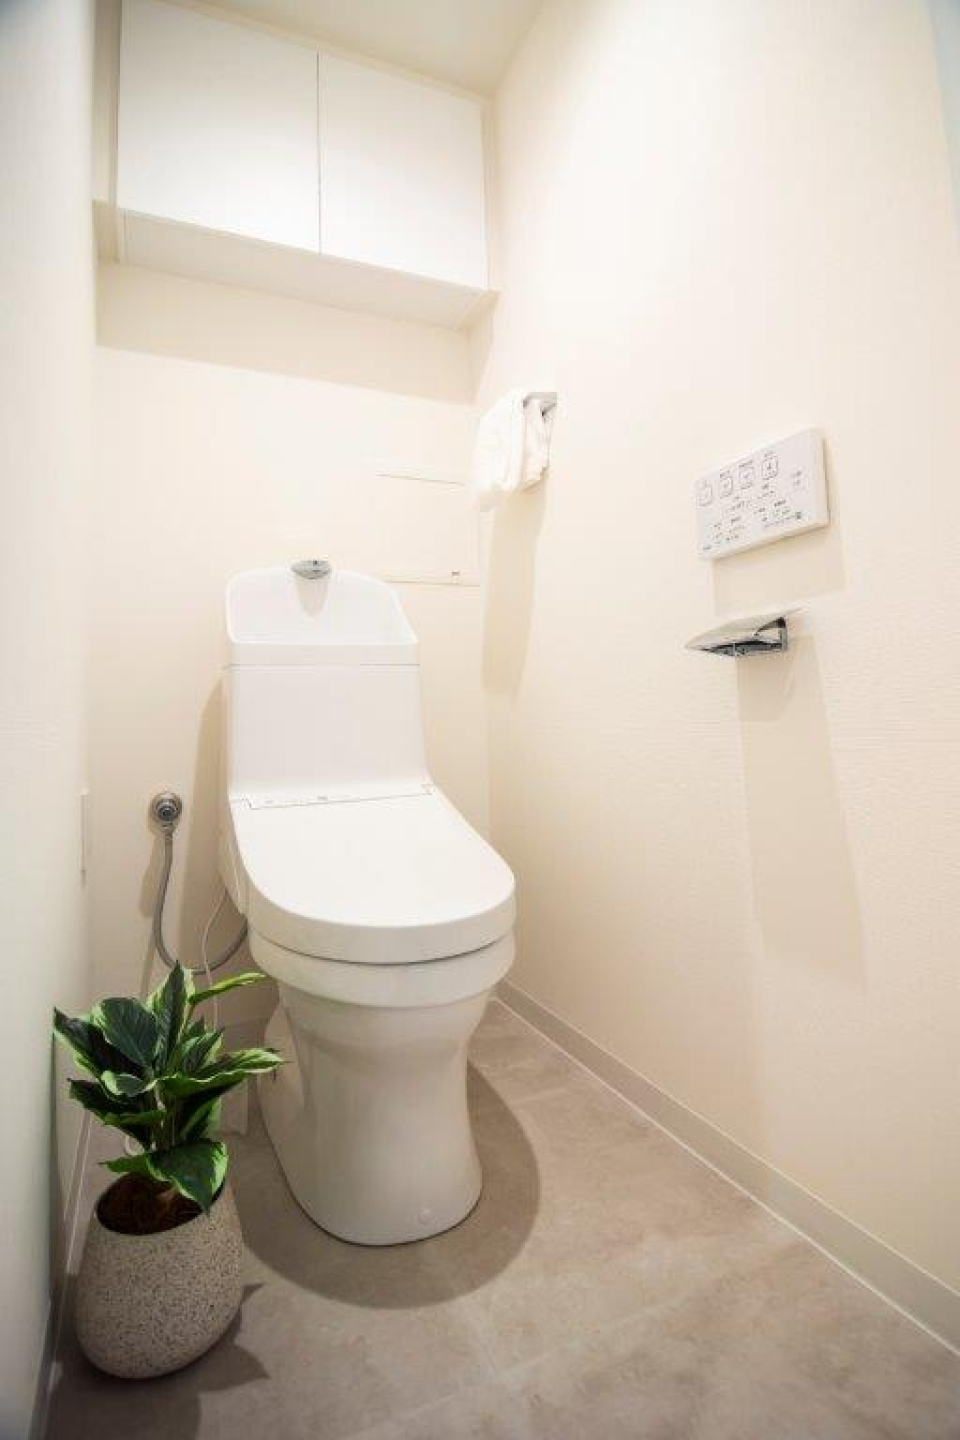 トイレは一体型の温水洗浄便座